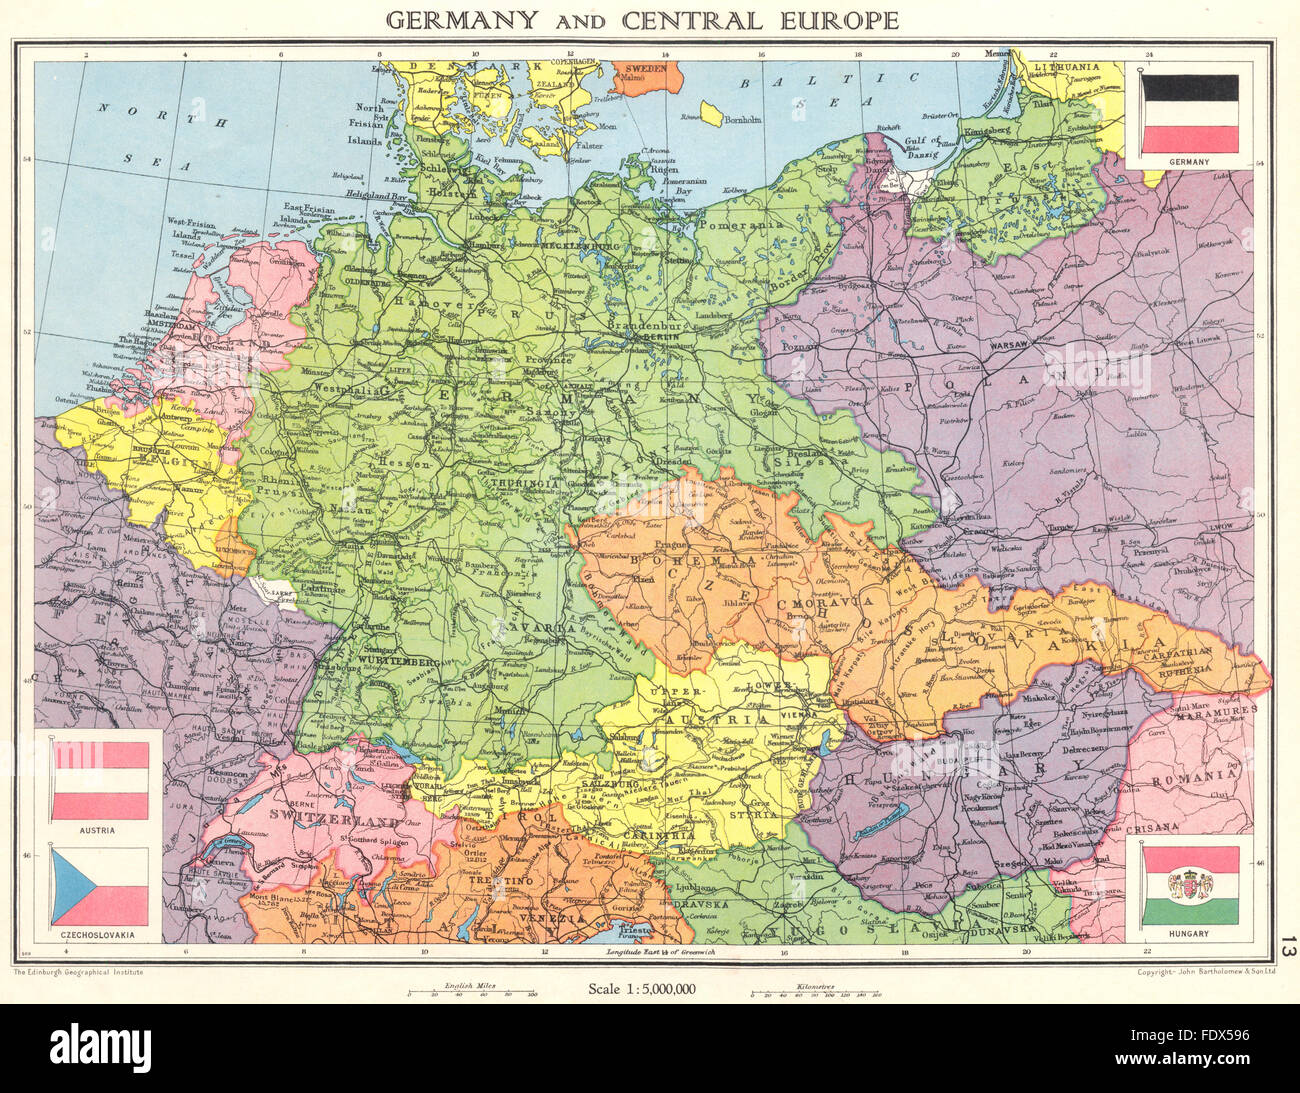 Deutschland Mitteleuropa Kurz Vor Welt Krieg 2 Saarland 1938 Alte Karte Stockfotografie Alamy